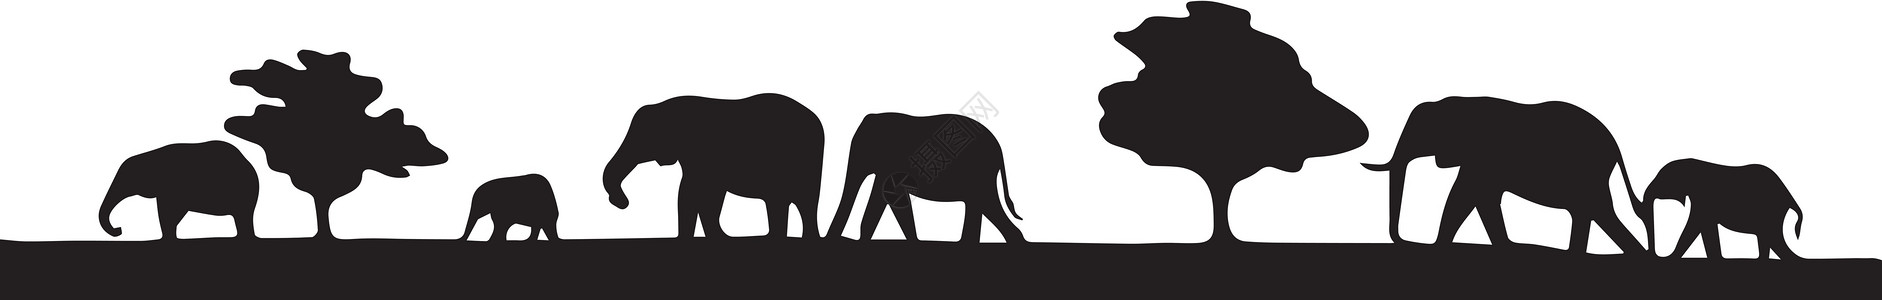 大象在Silhouette闻名图片